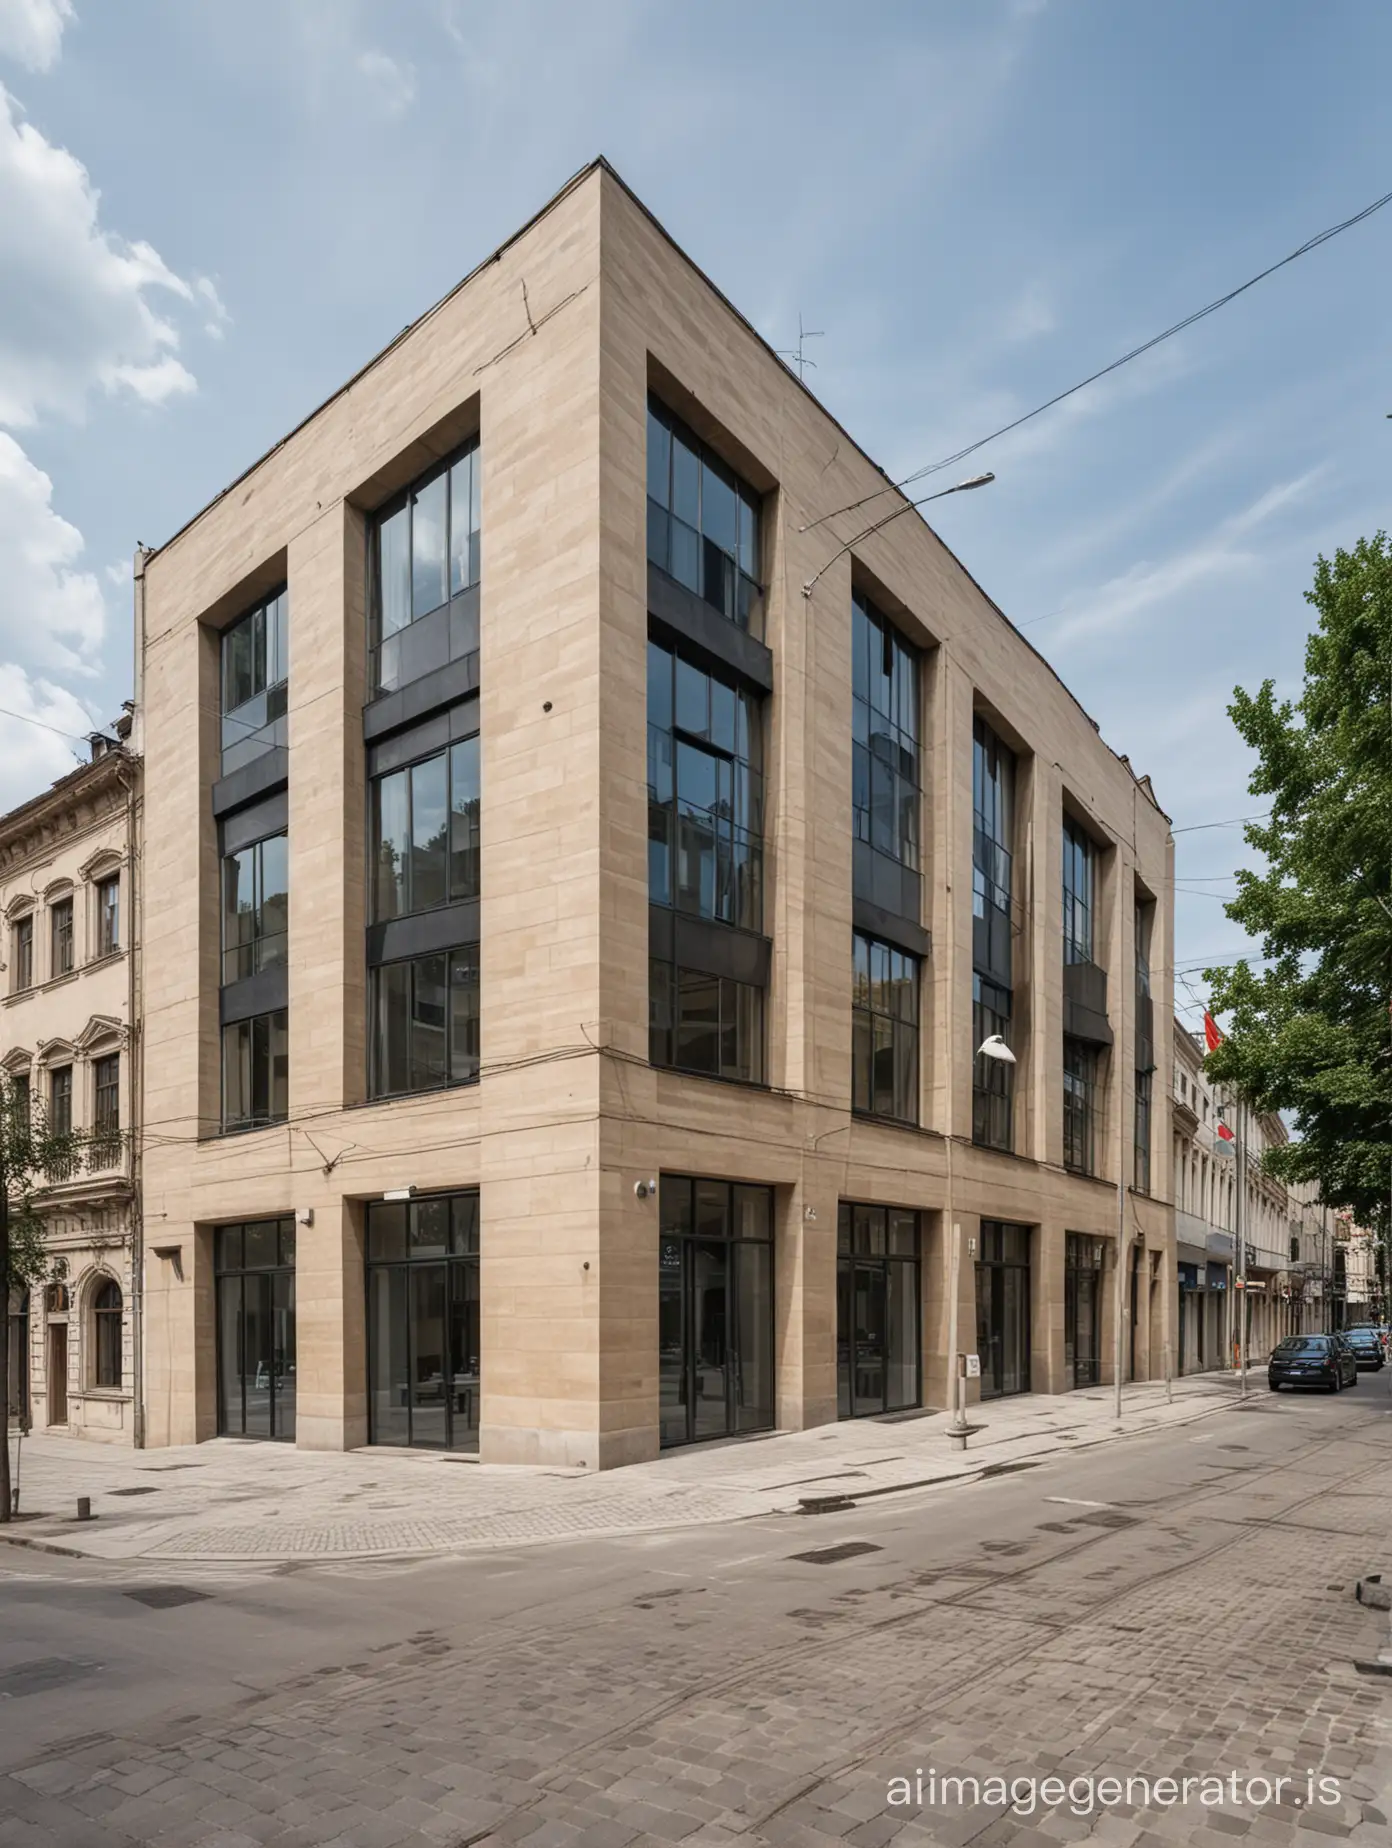 Medium-storey contemporary  public building in historic district in Lviv region, Ukraine